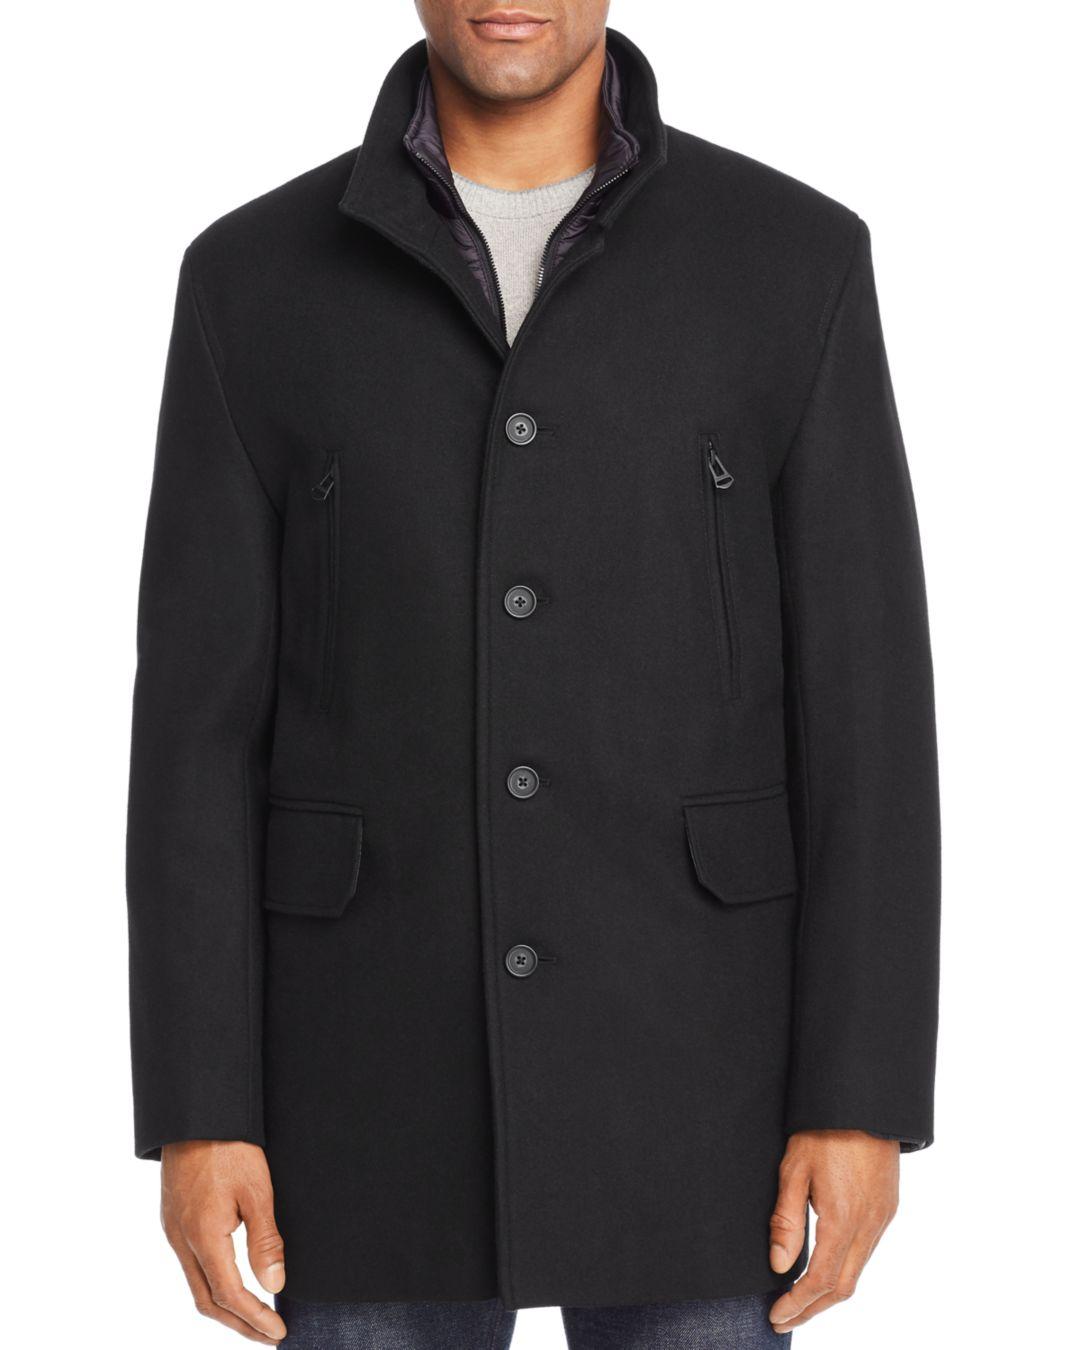 Cole Haan Wool Melton 3 - In - 1 Top Coat in Black for Men - Lyst